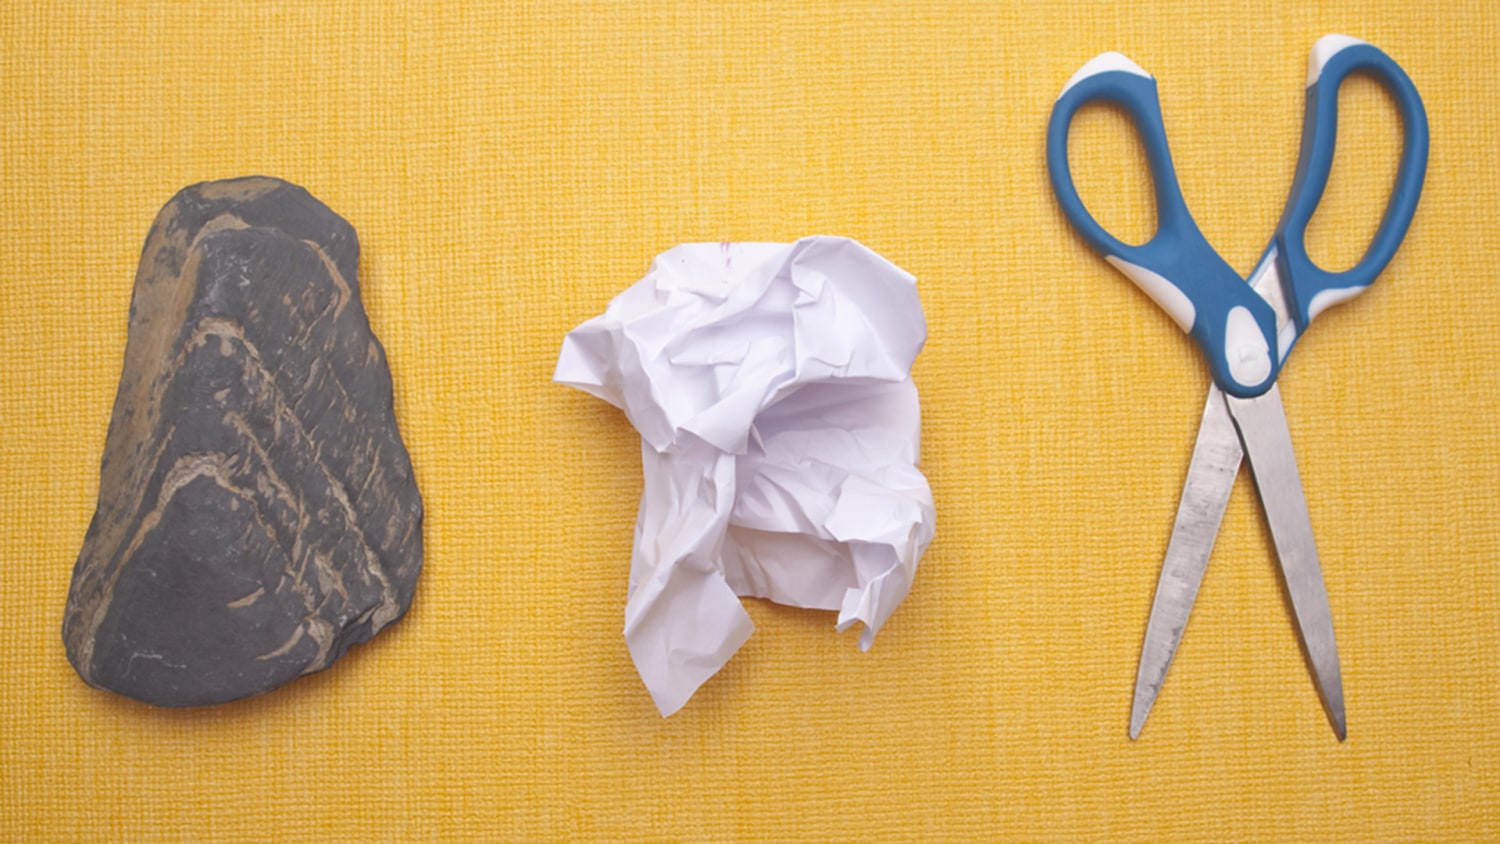 Make Rock Paper Scissors a Habit - Recess Lab